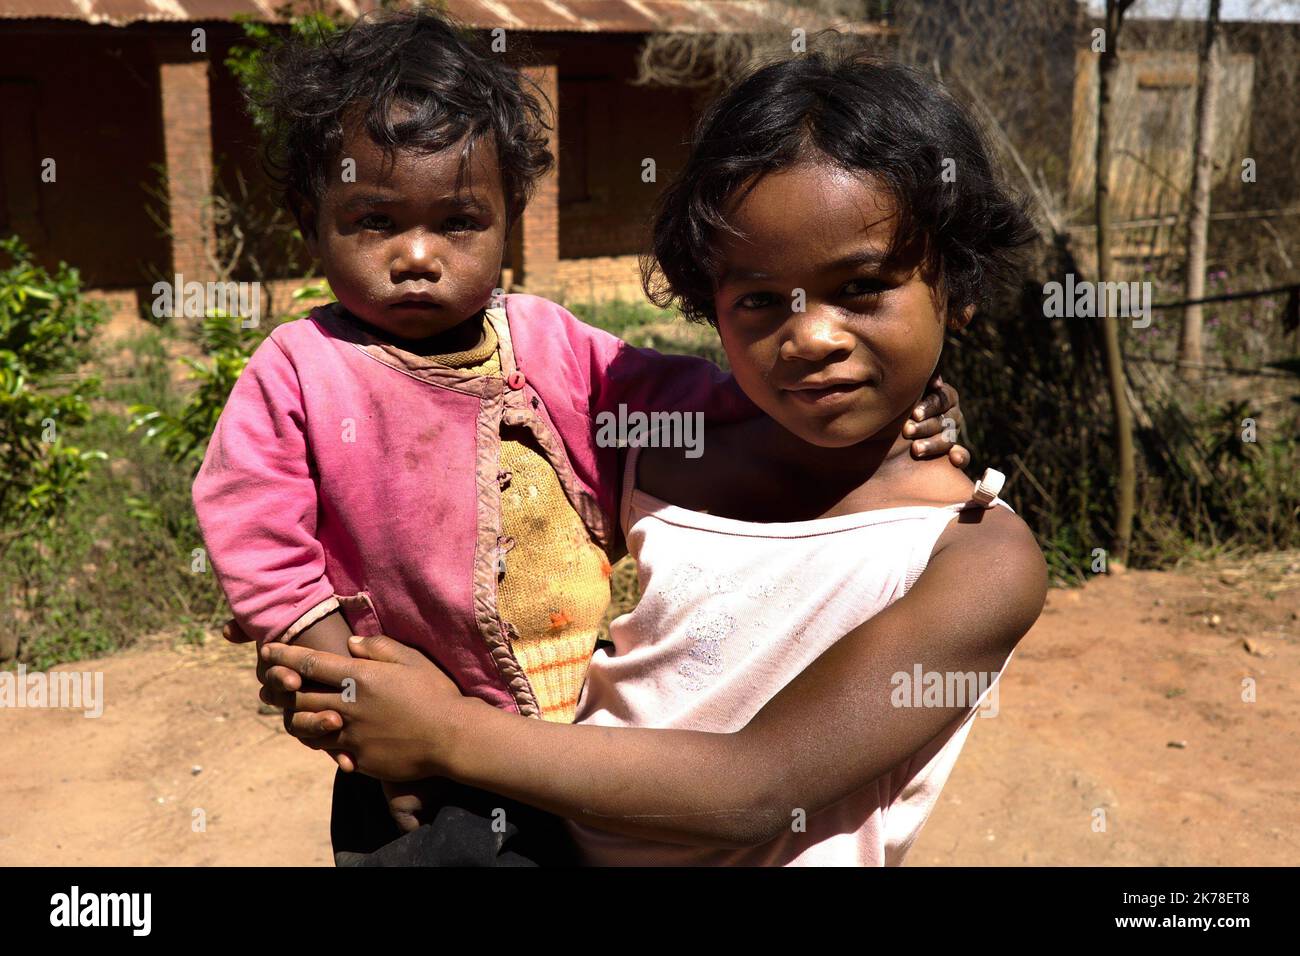 ©Arnaud De Grave / Le Pictorium/MAXPPP - Arnaud De Grave / Le Pictorium - 13/11/2015  -  Madagascar / Alaotra-Mangoro  -  Enfants.  / 13/11/2015  -  Madagascar / Alaotra-Mangoro  -  Kids. Stock Photo